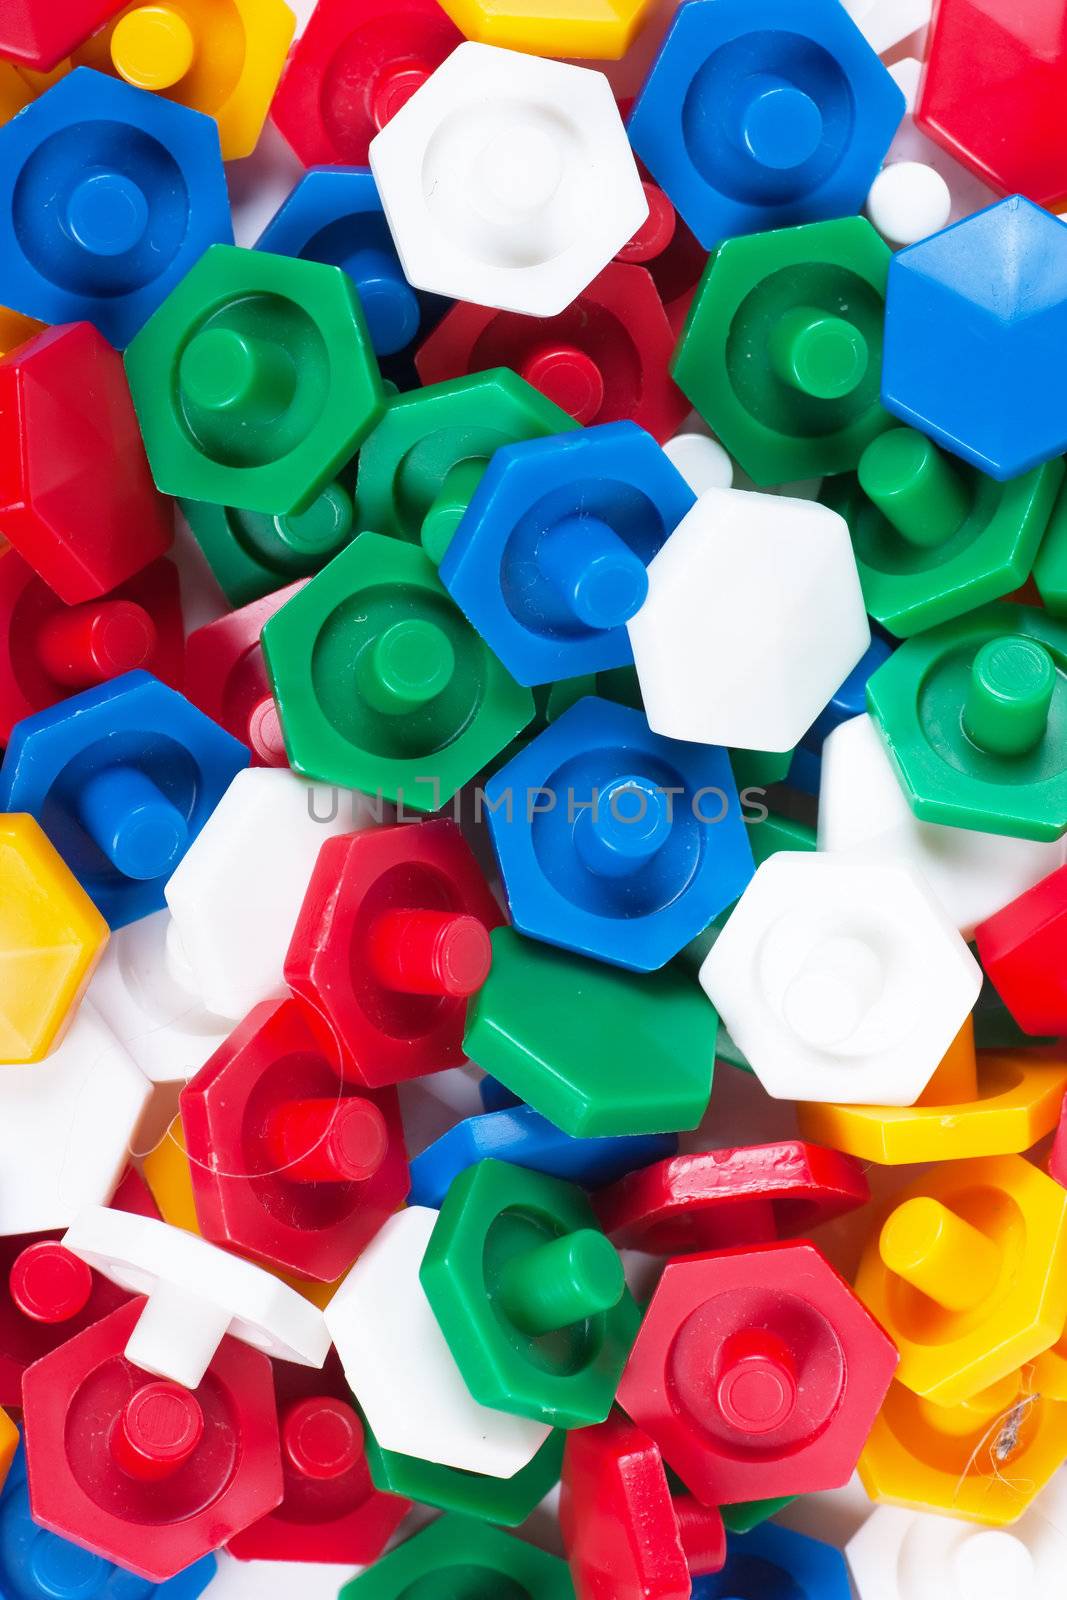 Plastic blocks by AGorohov